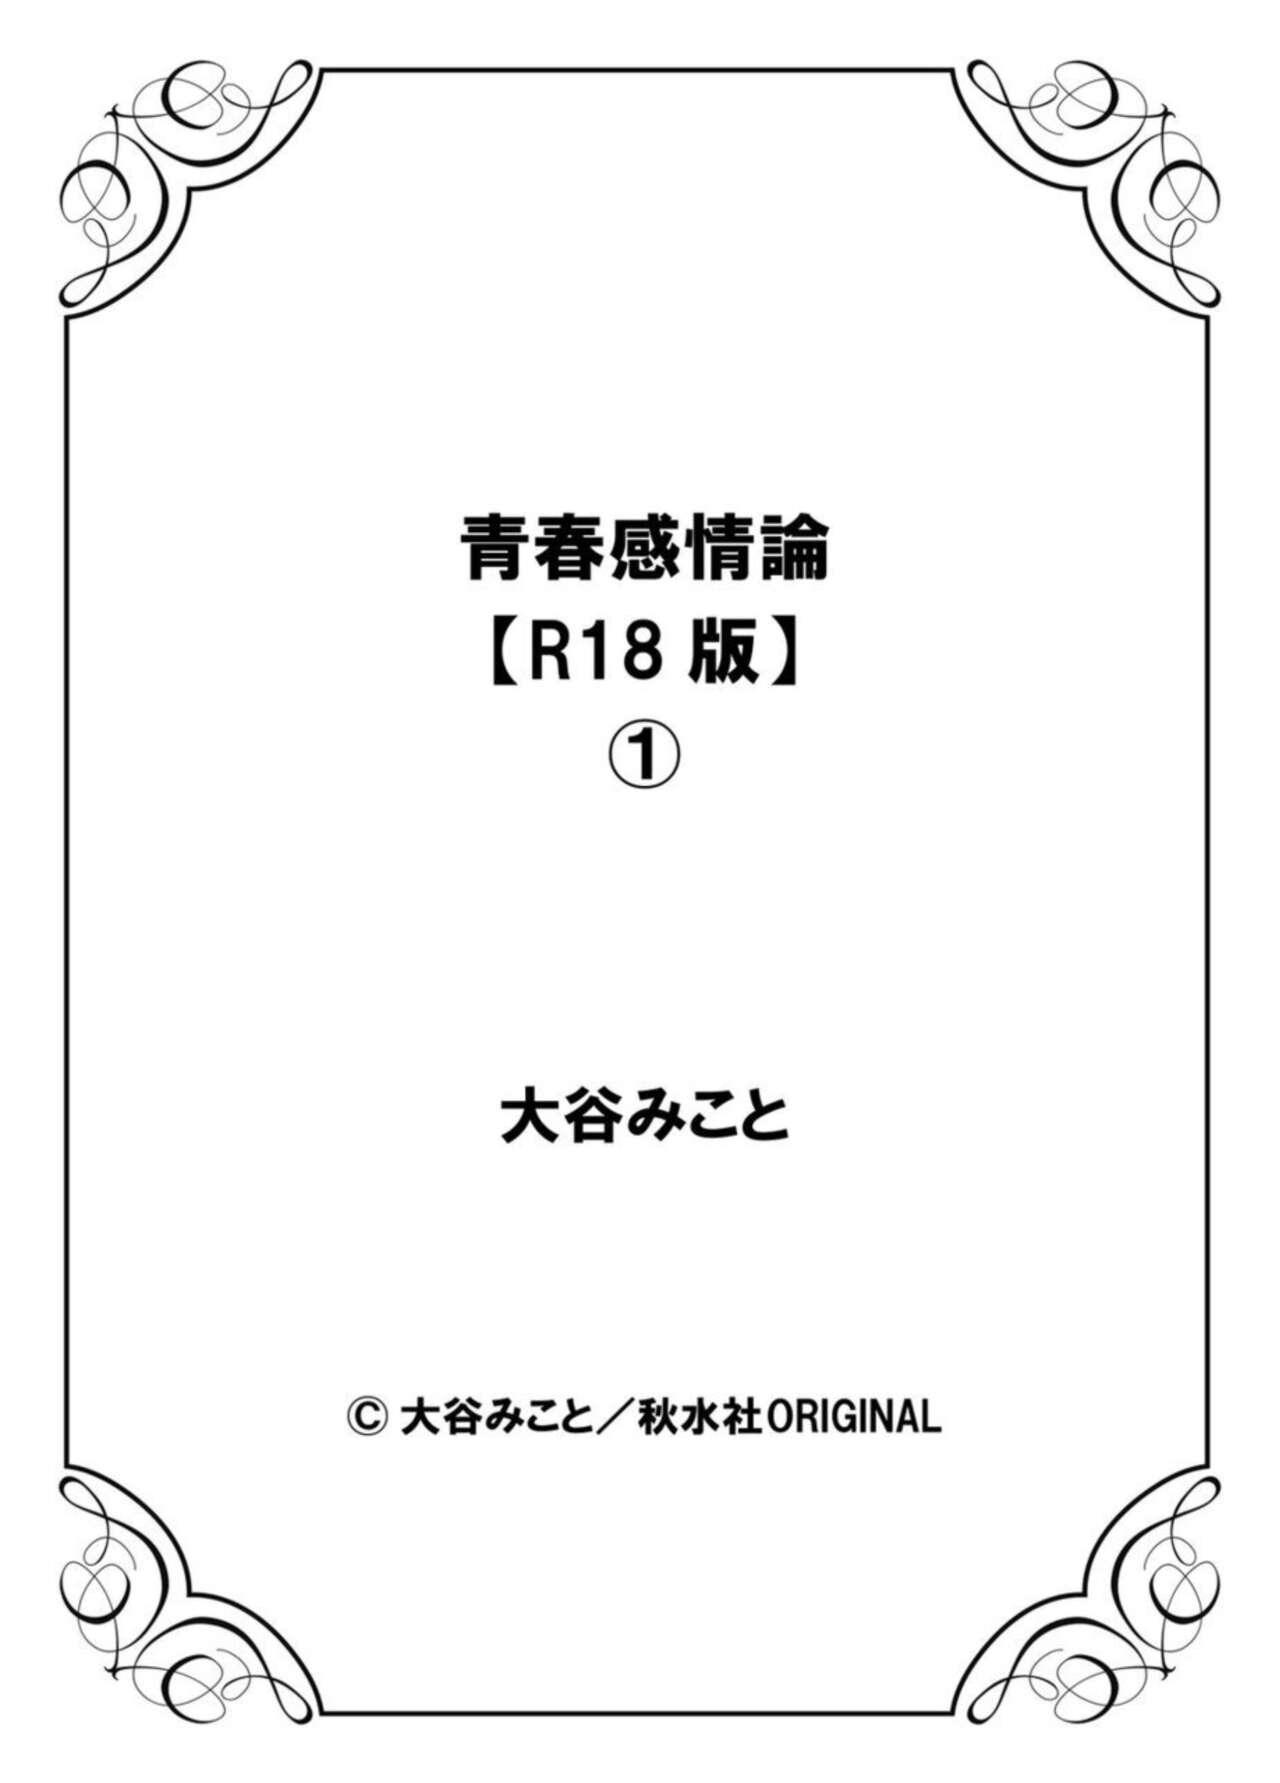 [Ootani Mikoto] Seishun Kanjouron - youth emotion theory [R18 Ban] 1 26